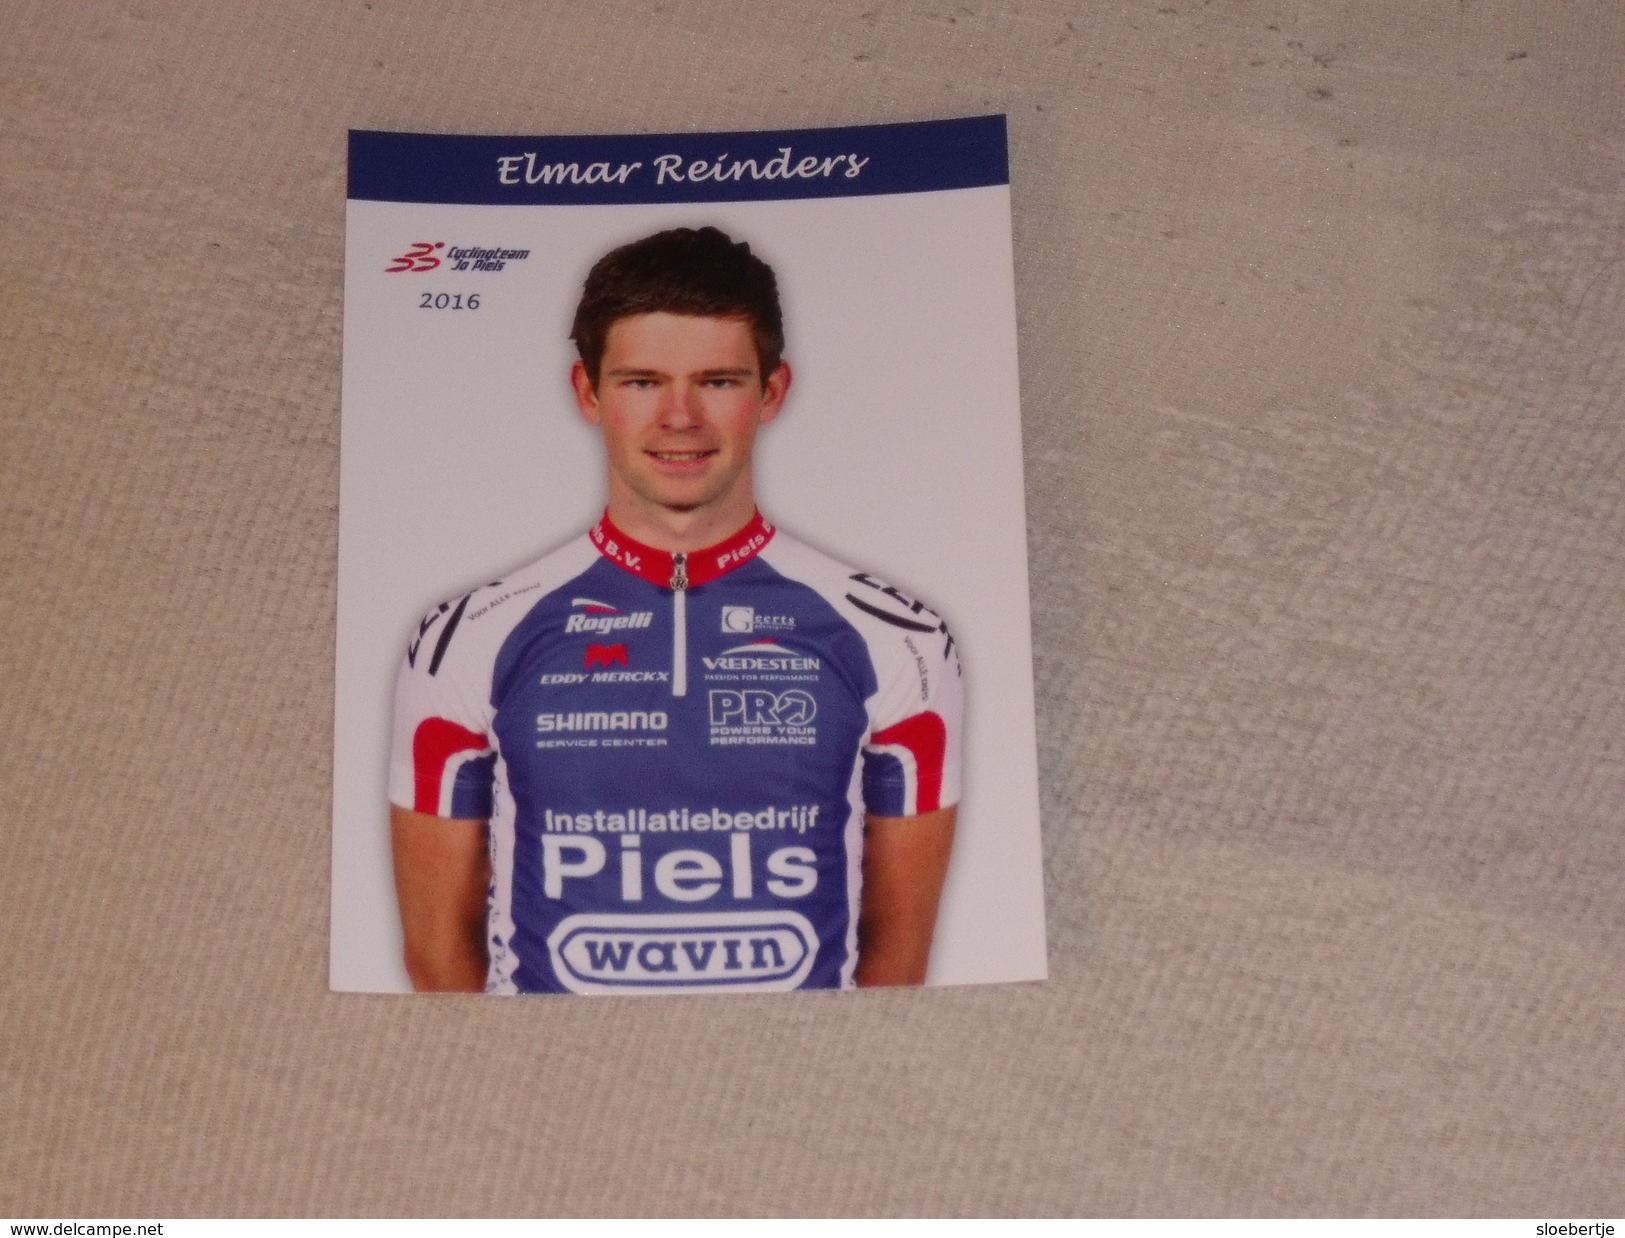 Elmar Reinders - Cyclingteam Jo Piels - 2016 - Wielrennen